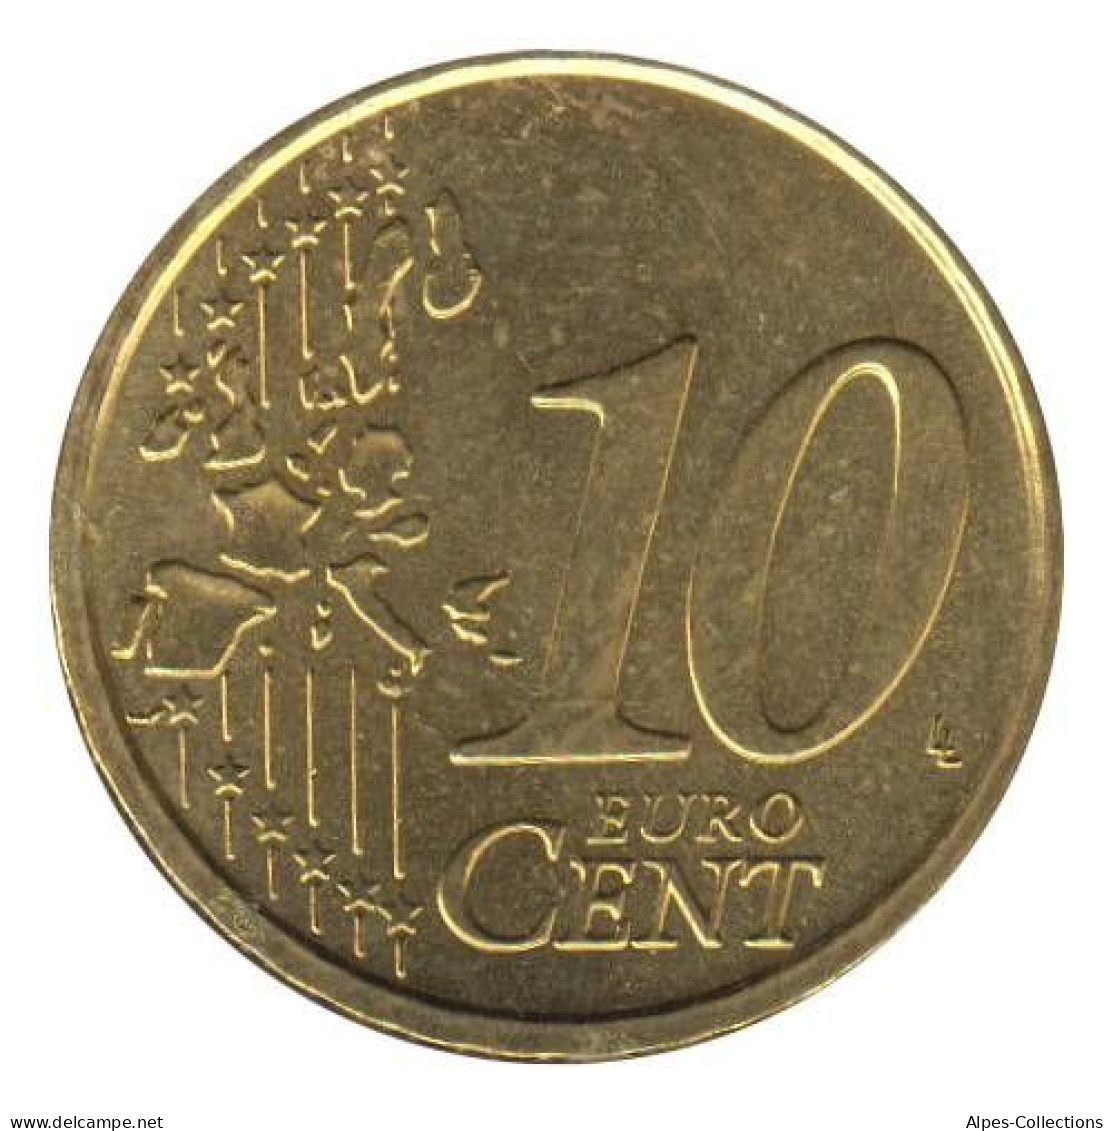 SA01007.1 - SAINT MARIN - 10 Cents - 2007 - San Marino